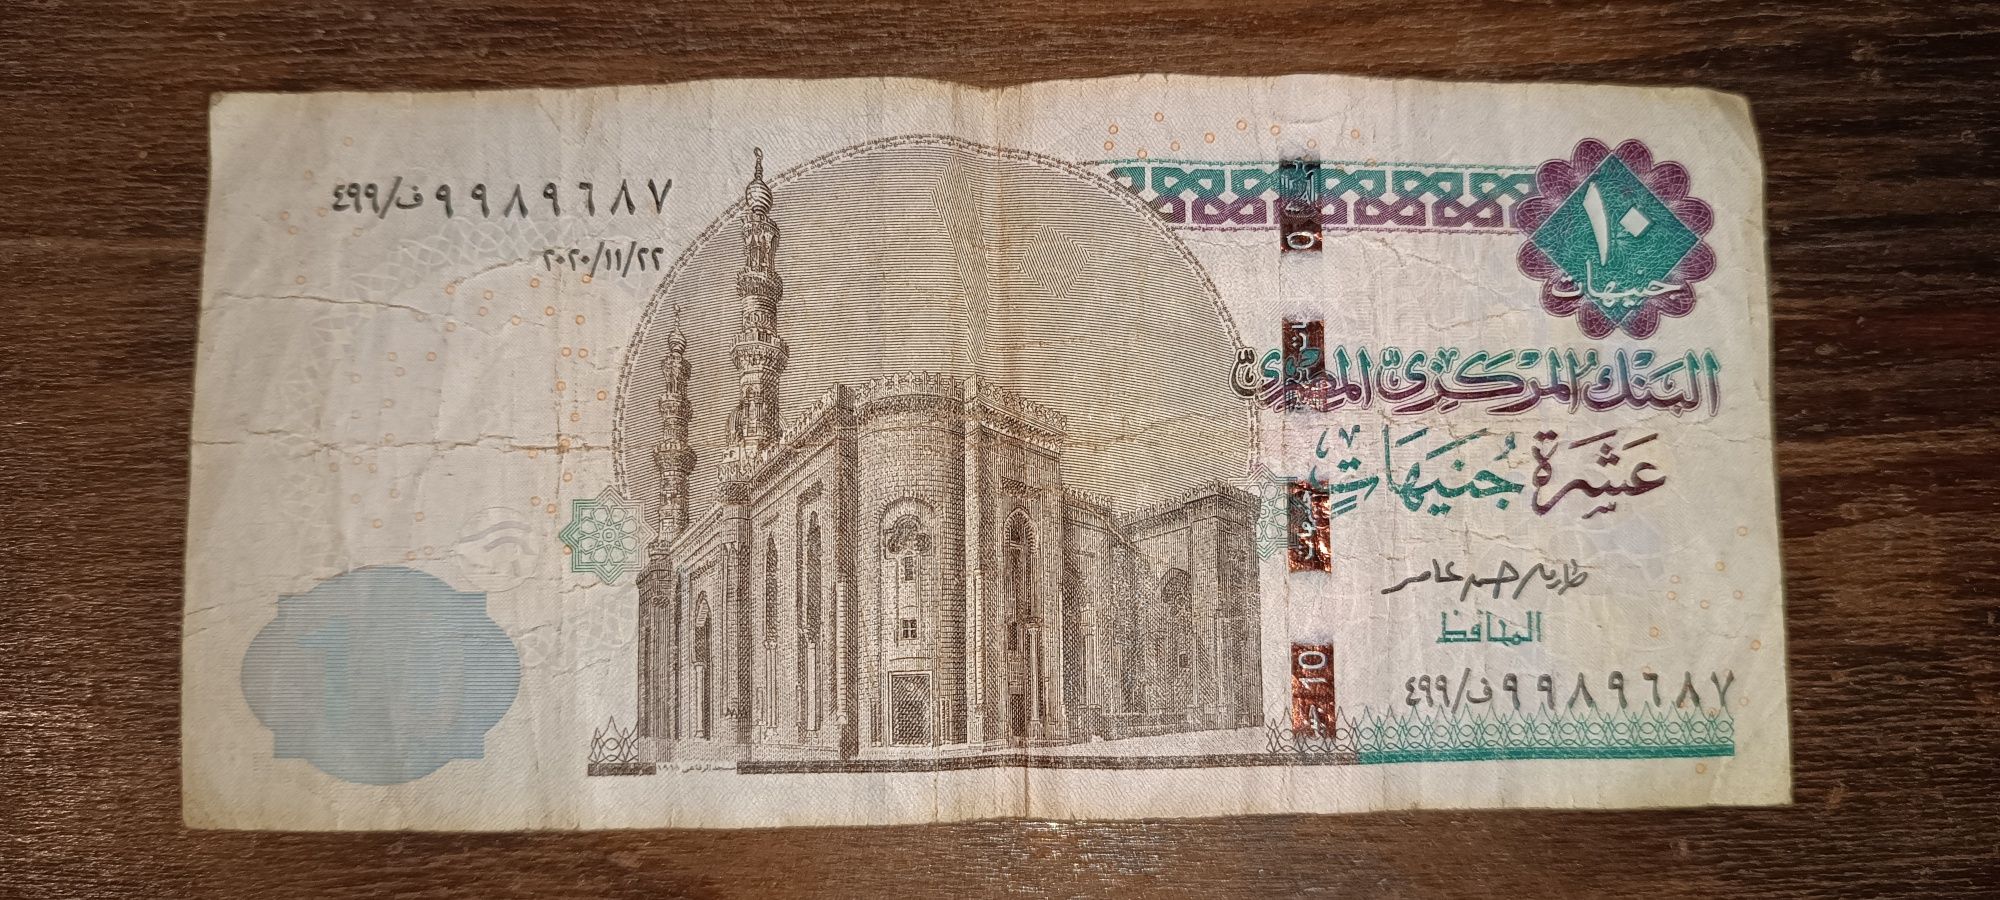 Бумажная купюра банкнота и монеты  Египта, Иордании